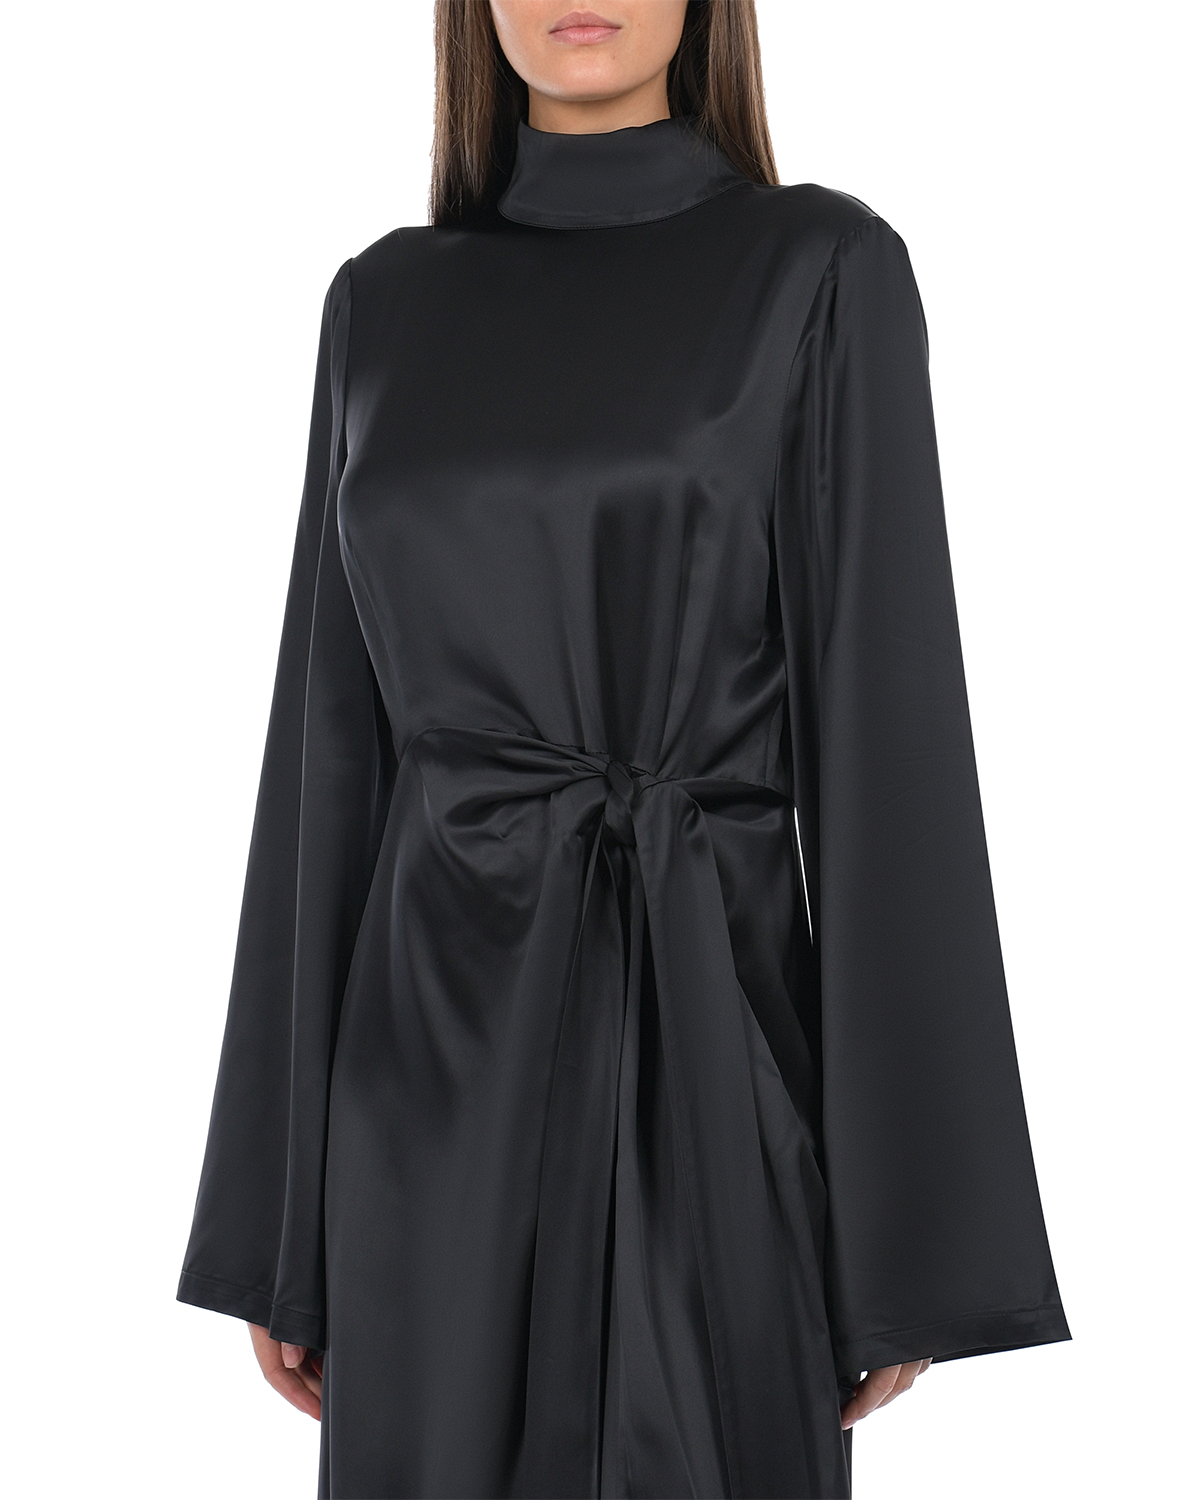 Черное платье с длинными расклешенными рукавами ROHE, размер 44, цвет черный - фото 7